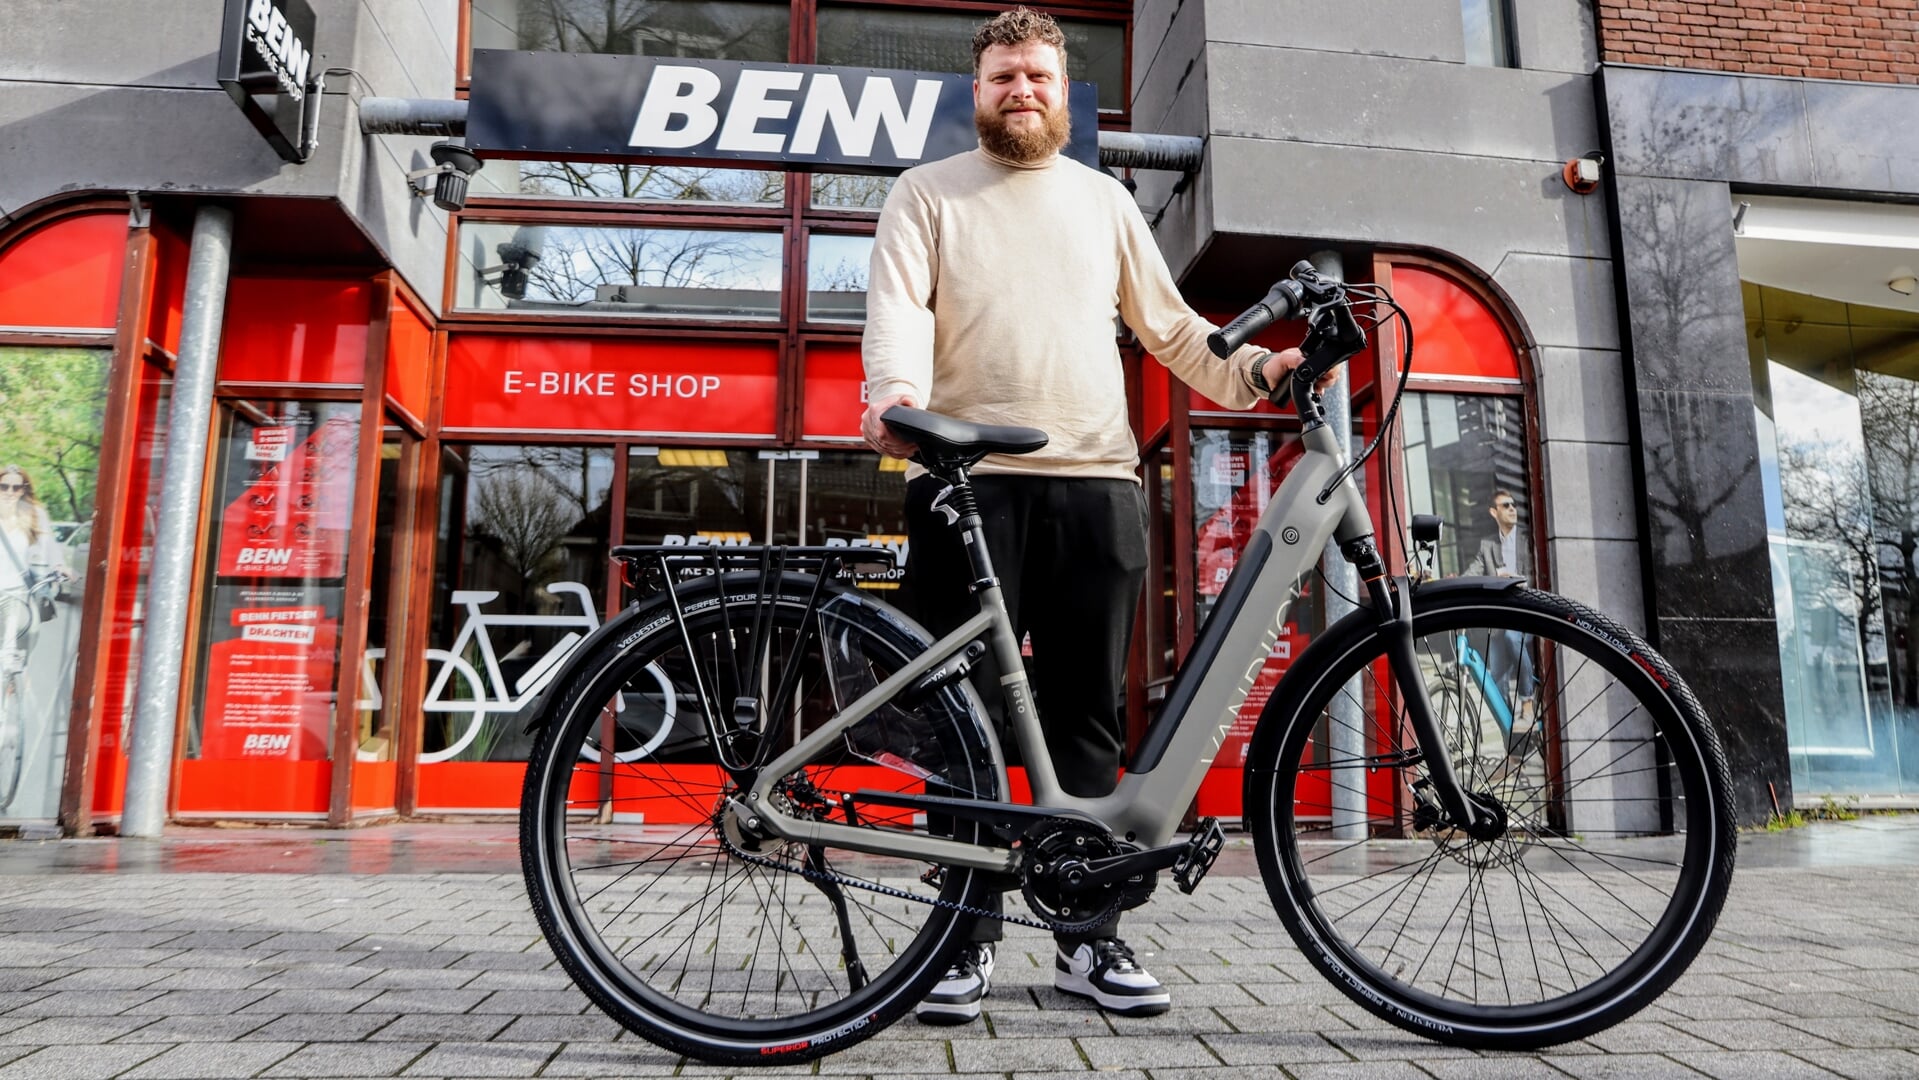 Kom zaterdag 22 april ook langs bij de nieuwe BENN E-bike shop in drachten. Op de foto eigenaar Benn Veninga.